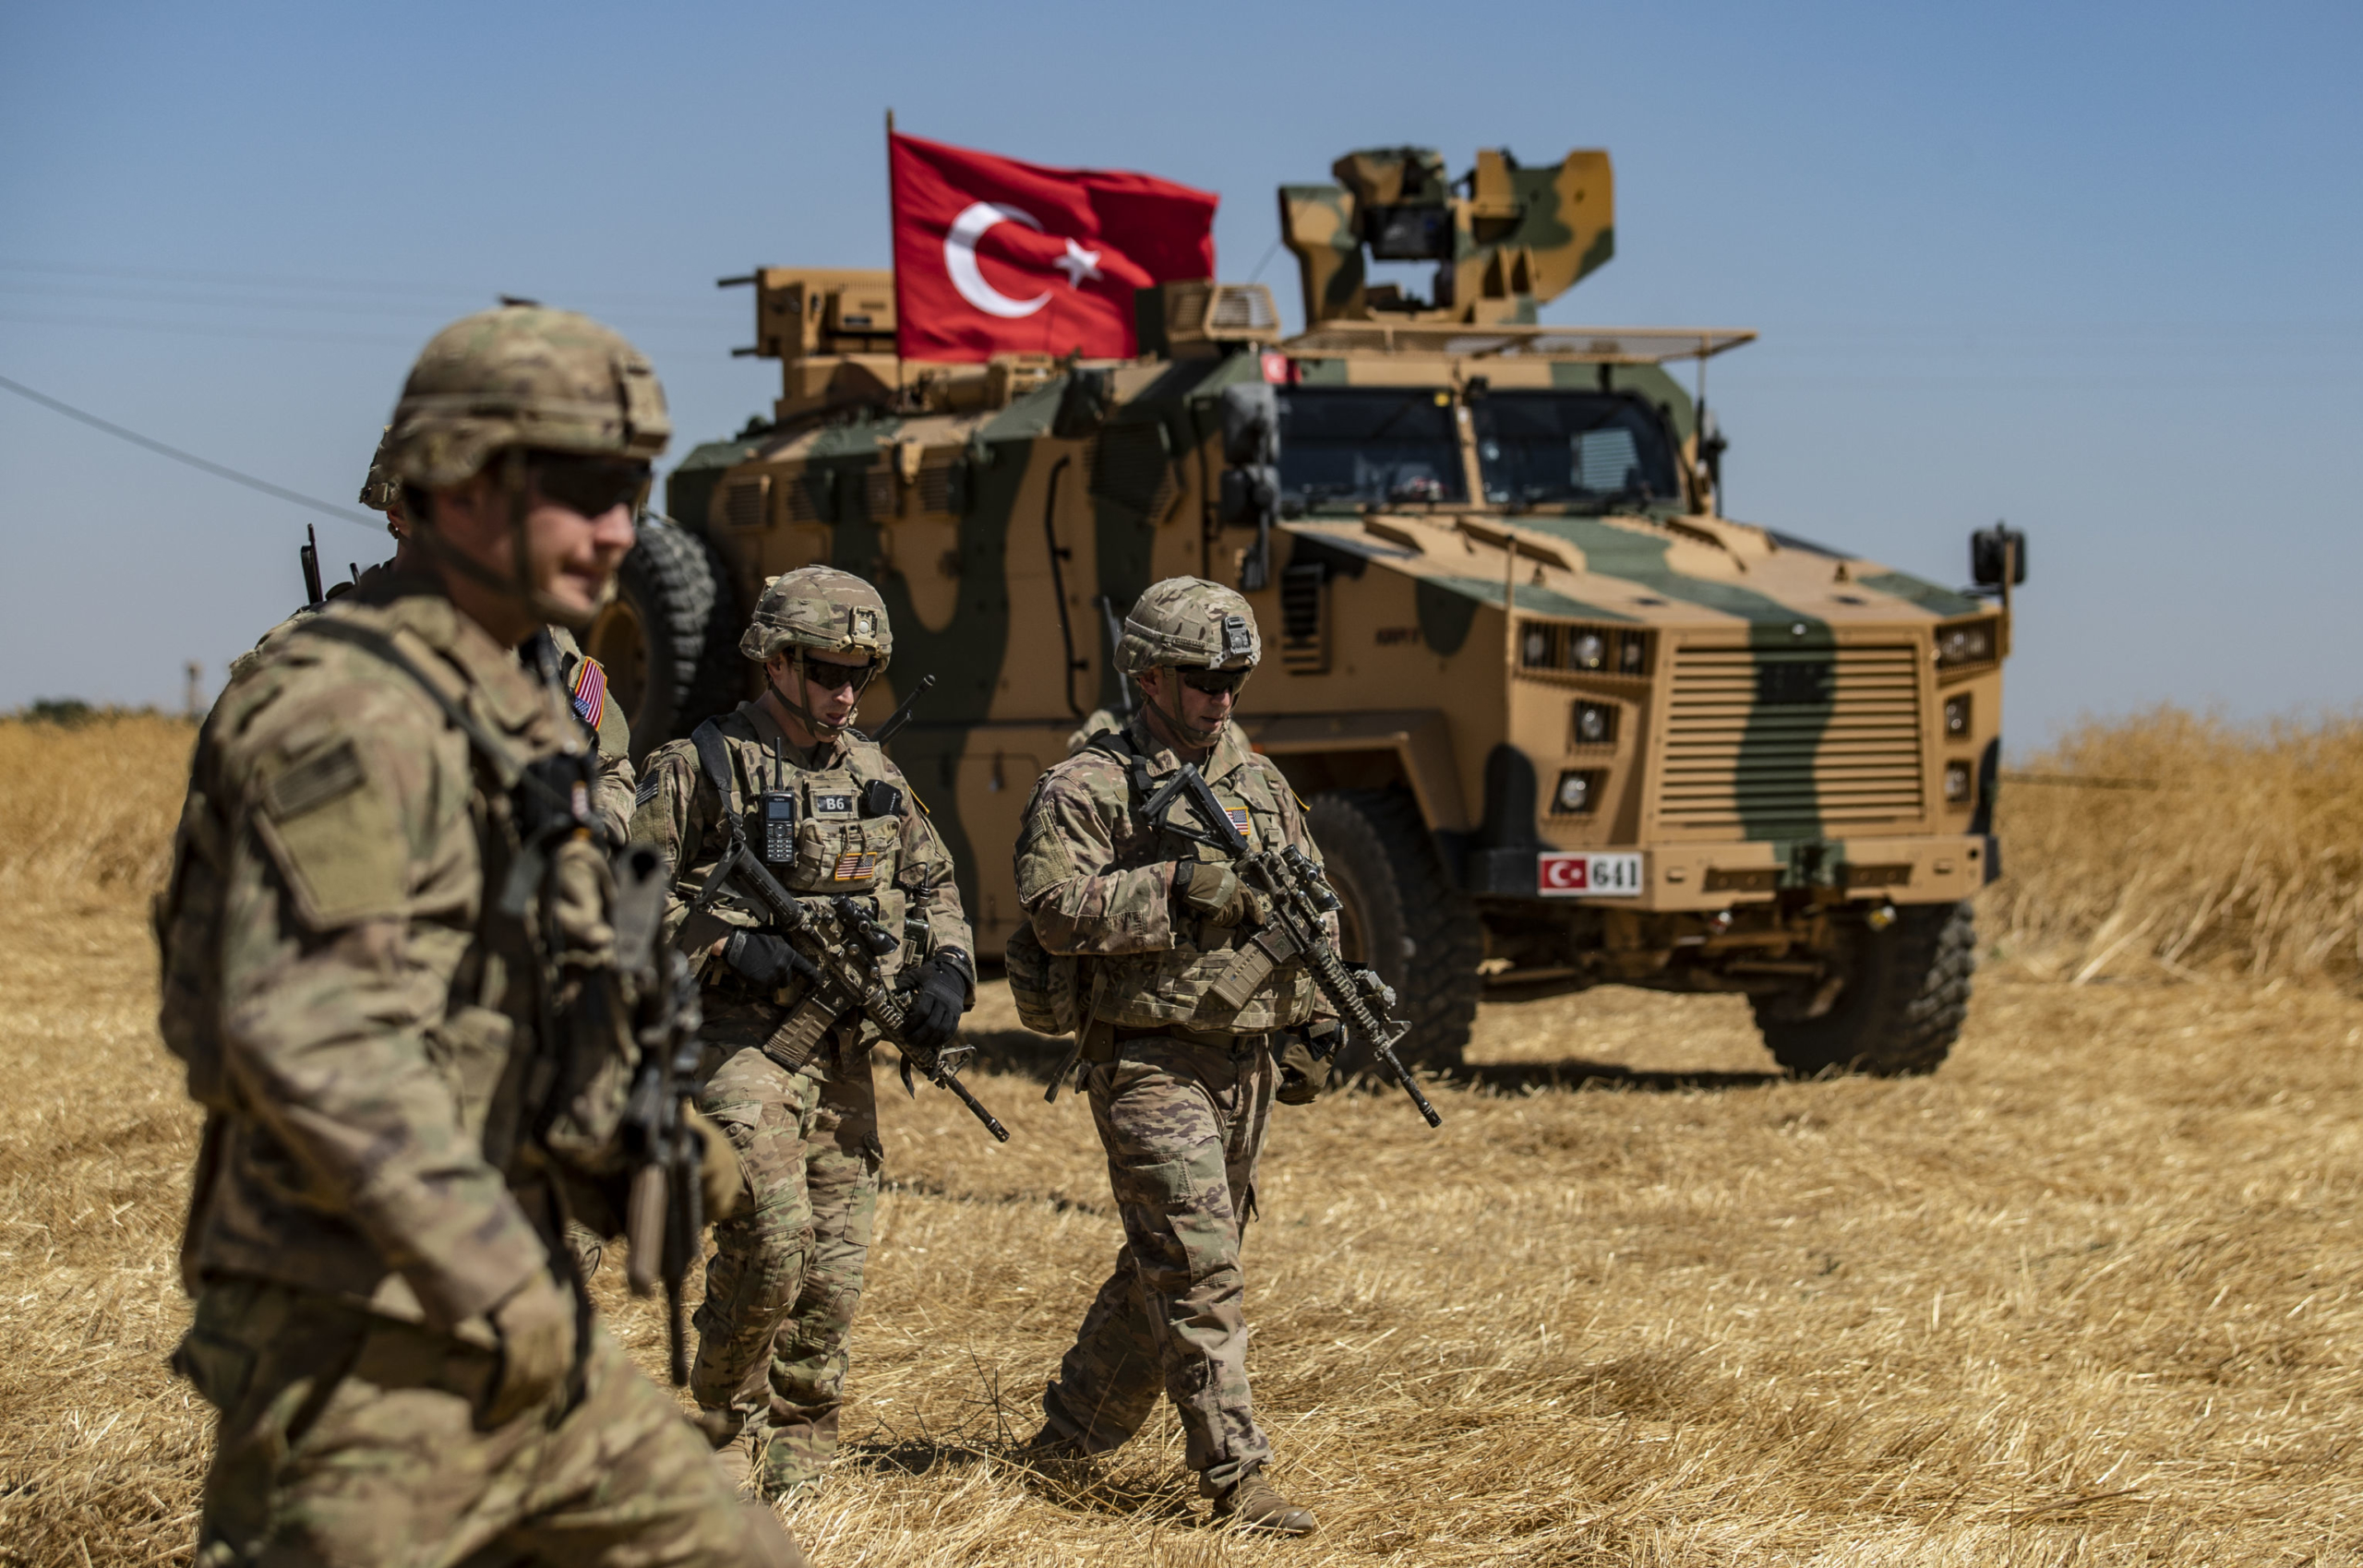 استخدام تركيا السلاح الألماني في سوريا رغم الحظر